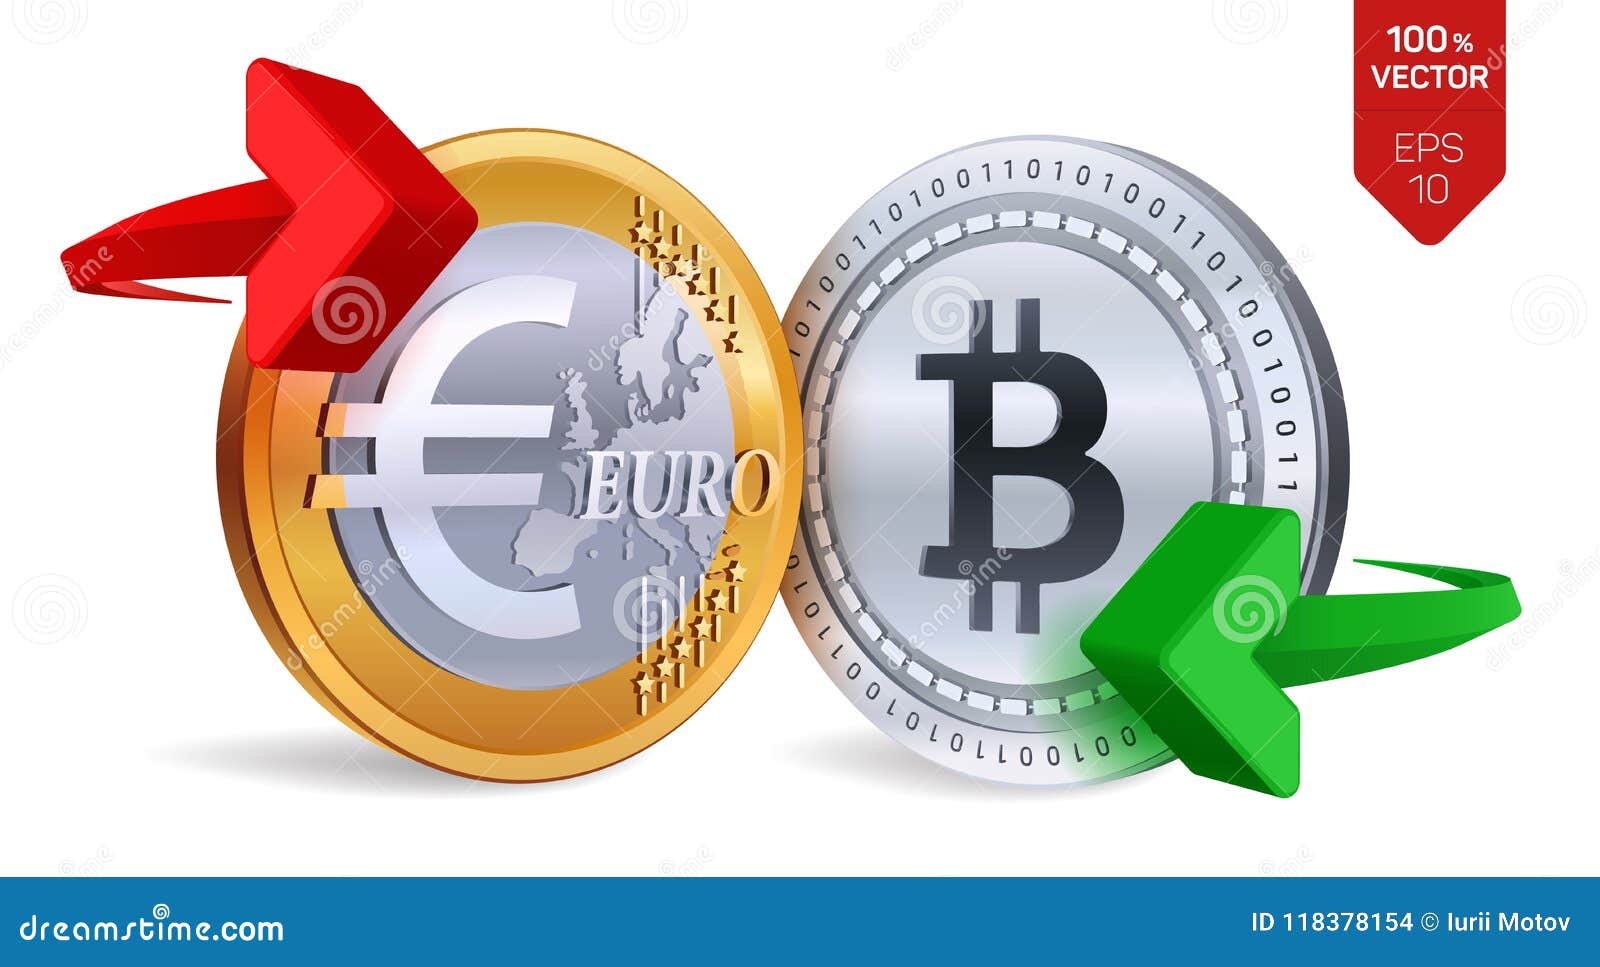 Exchange Cryptoexchange EUR to Bitcoin (BTC)  where is the best exchange rate?